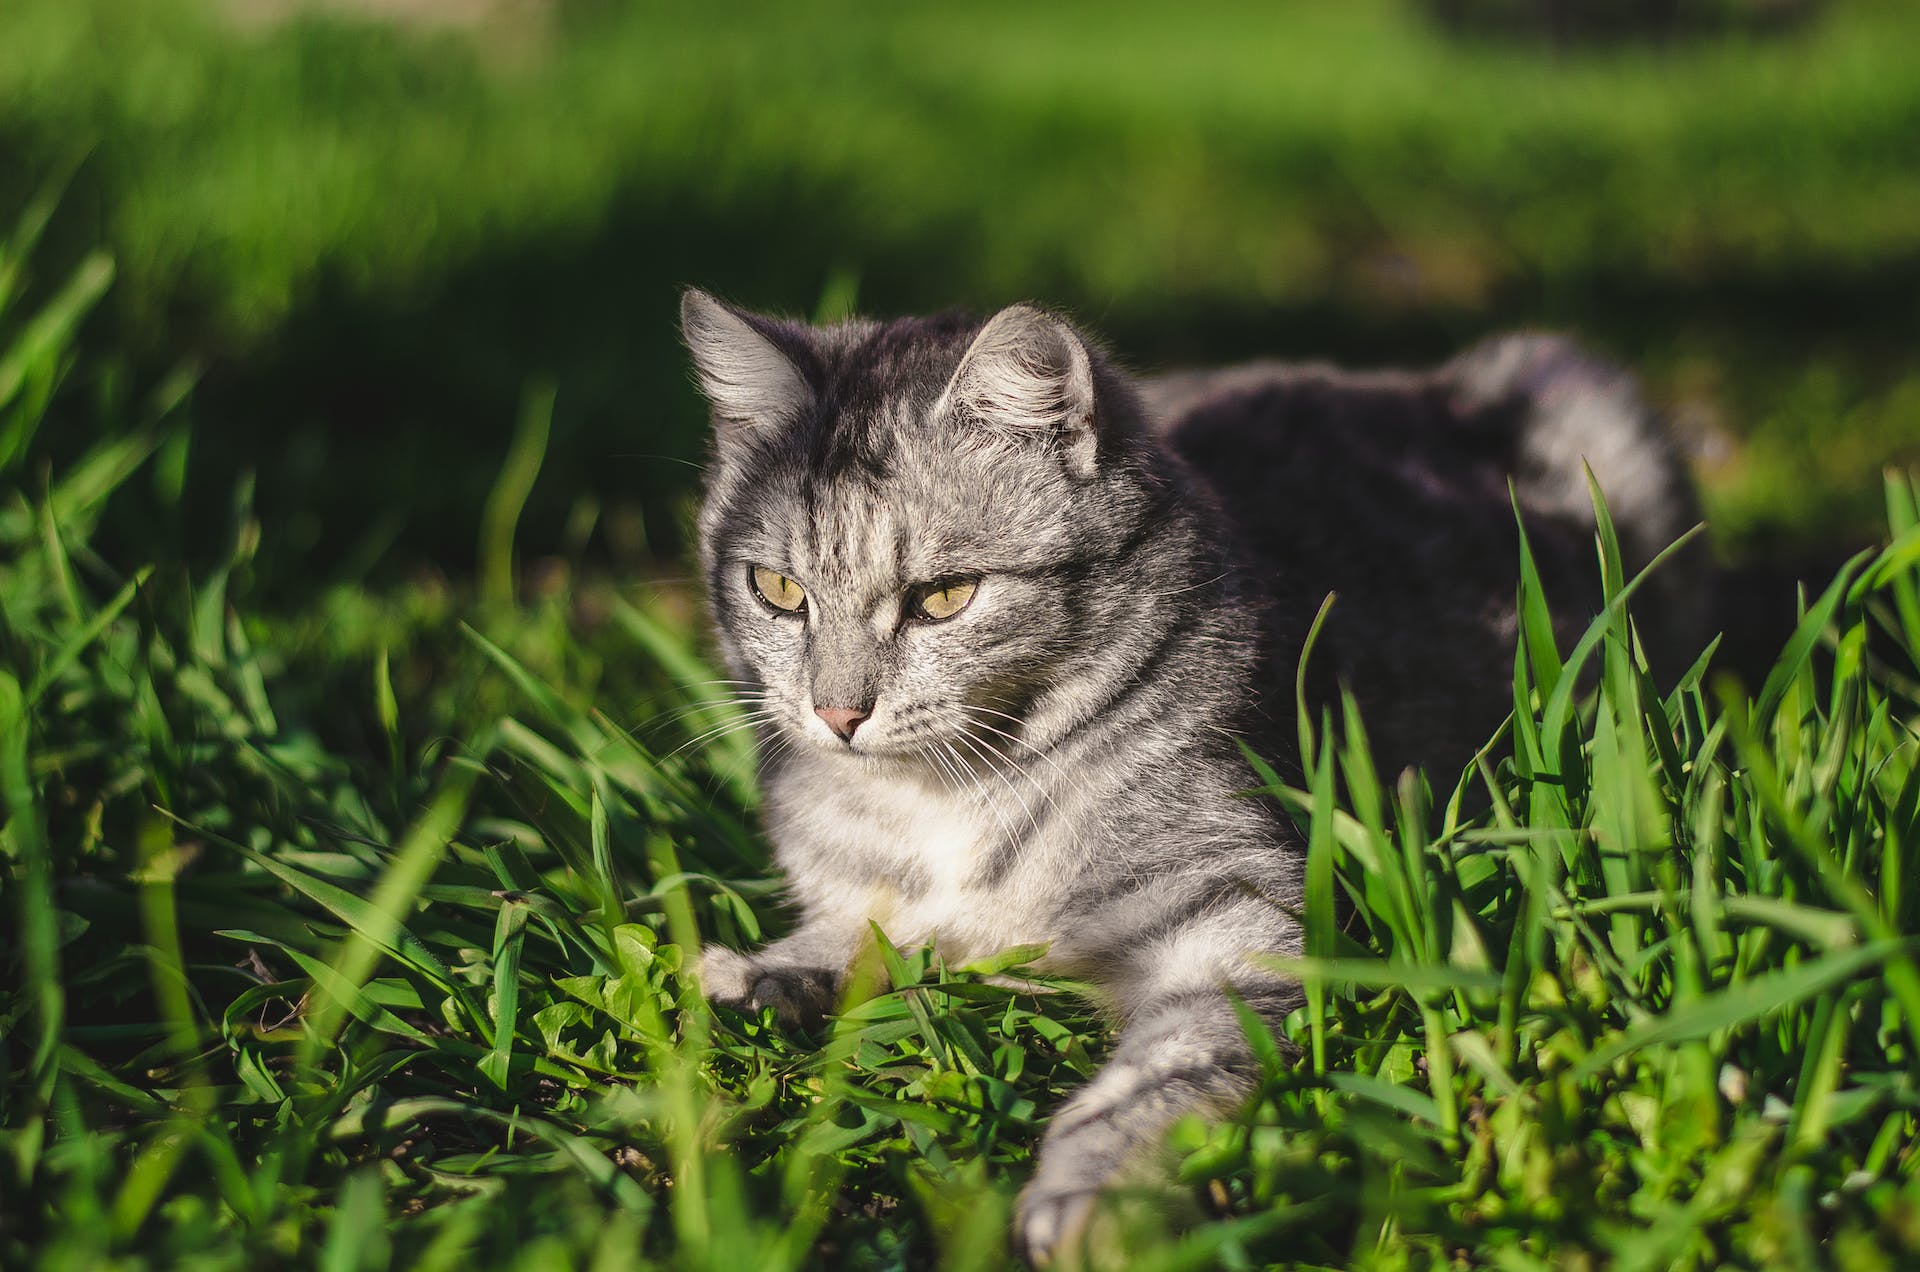 A cat sitting in a grassy field